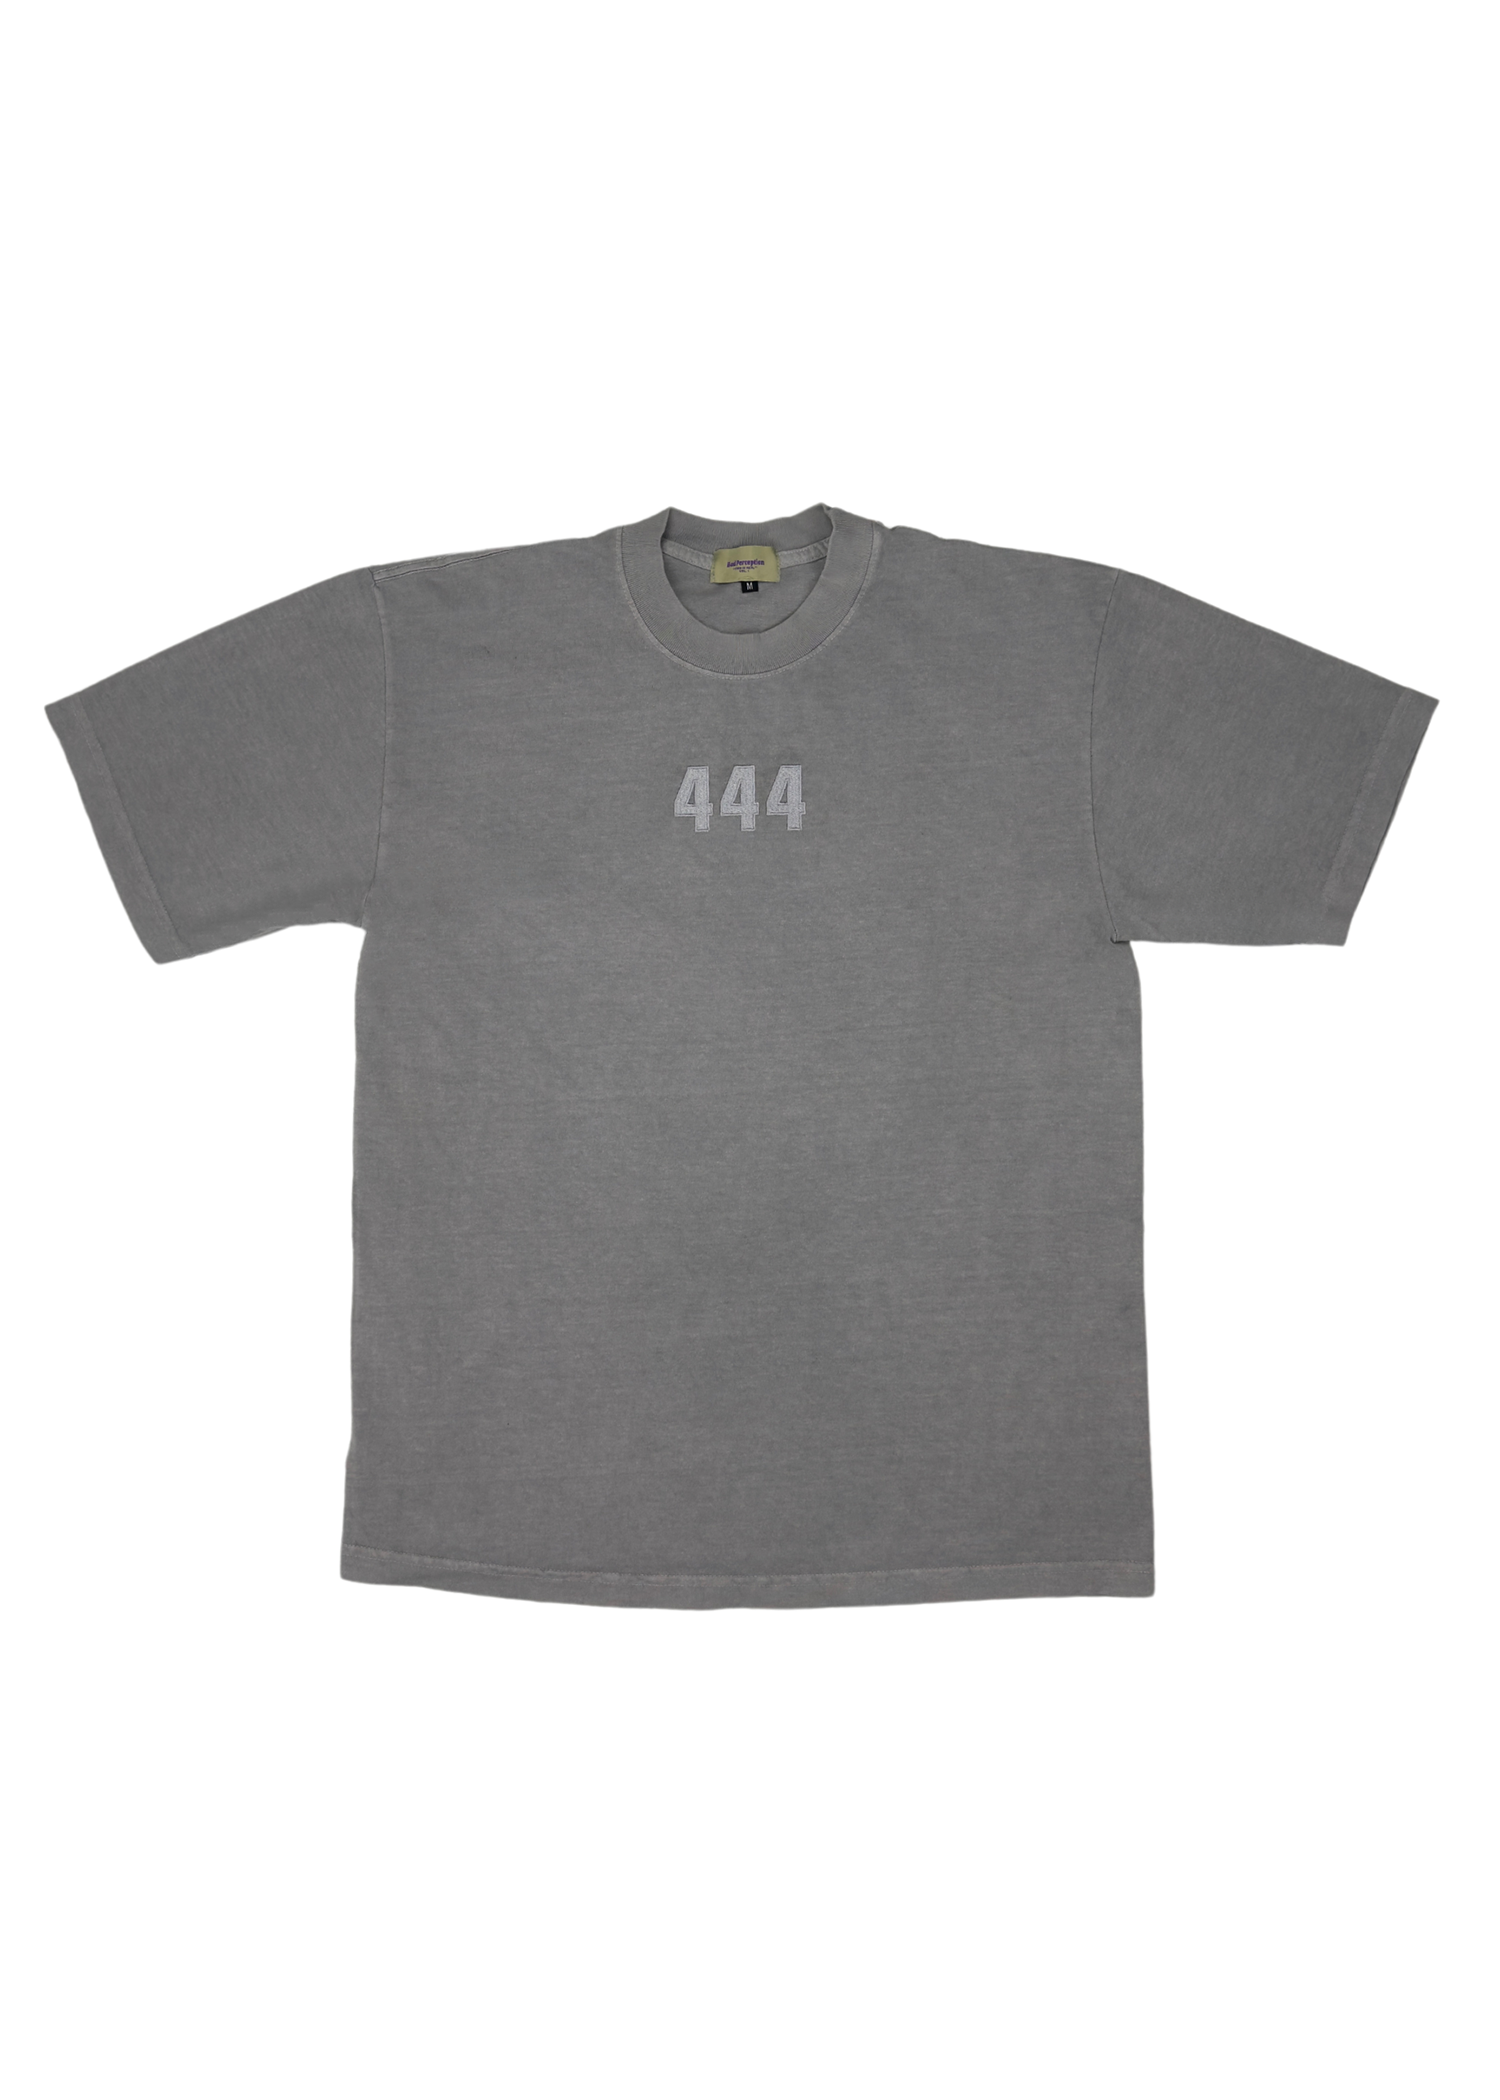 444 T-Shirt